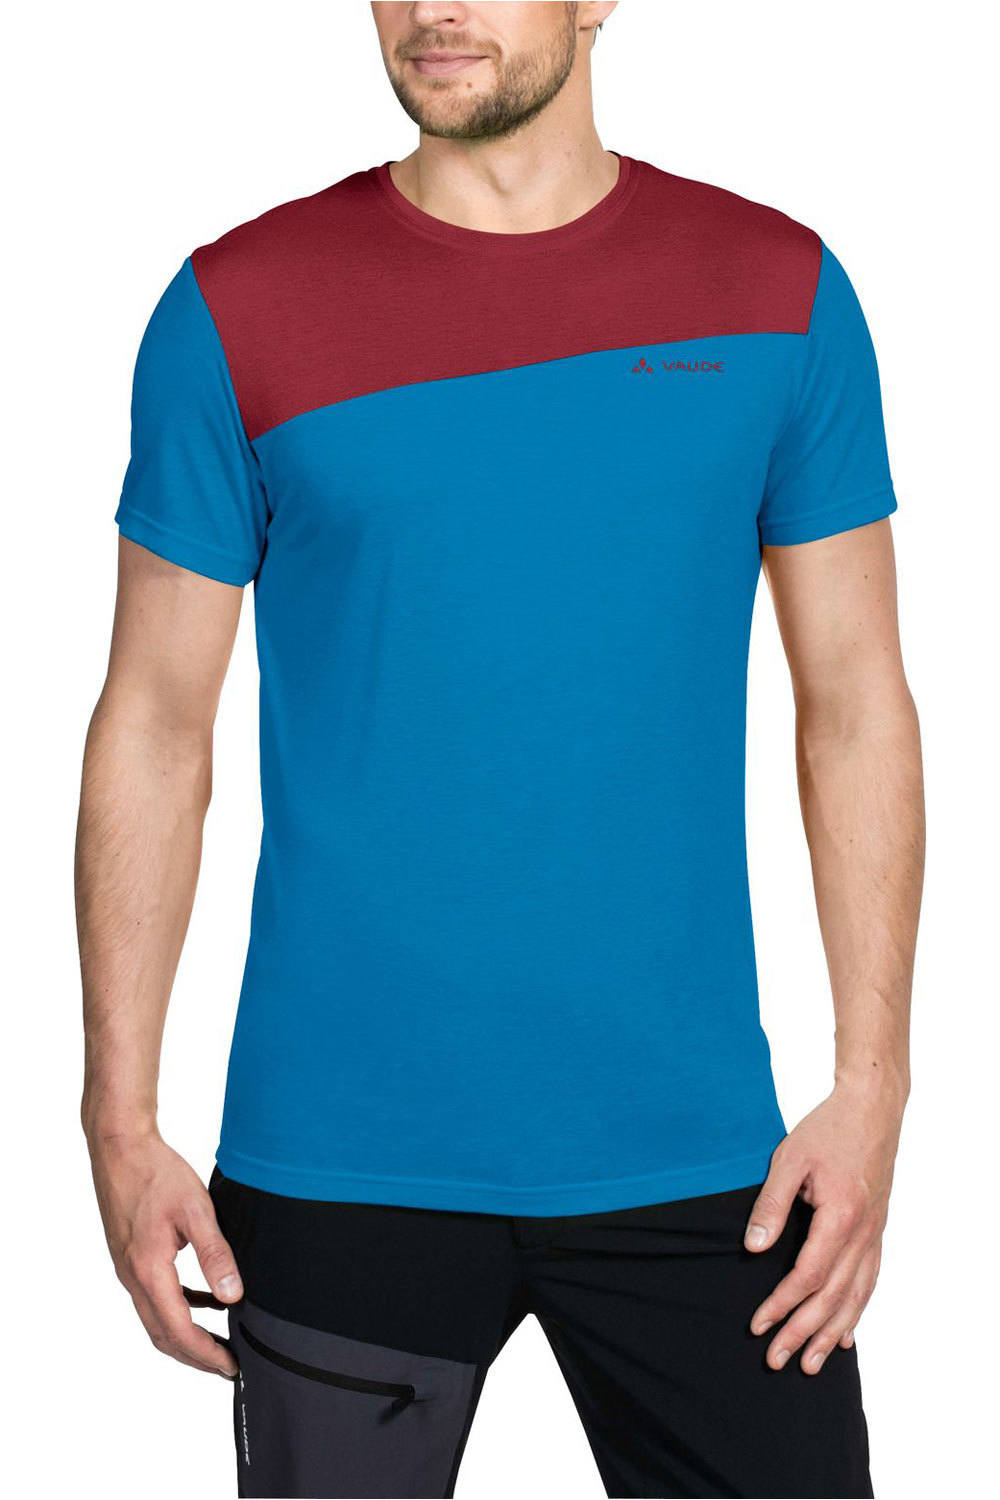 Vaude camiseta montaña manga corta hombre Mens Sveit T-Shirt vista frontal